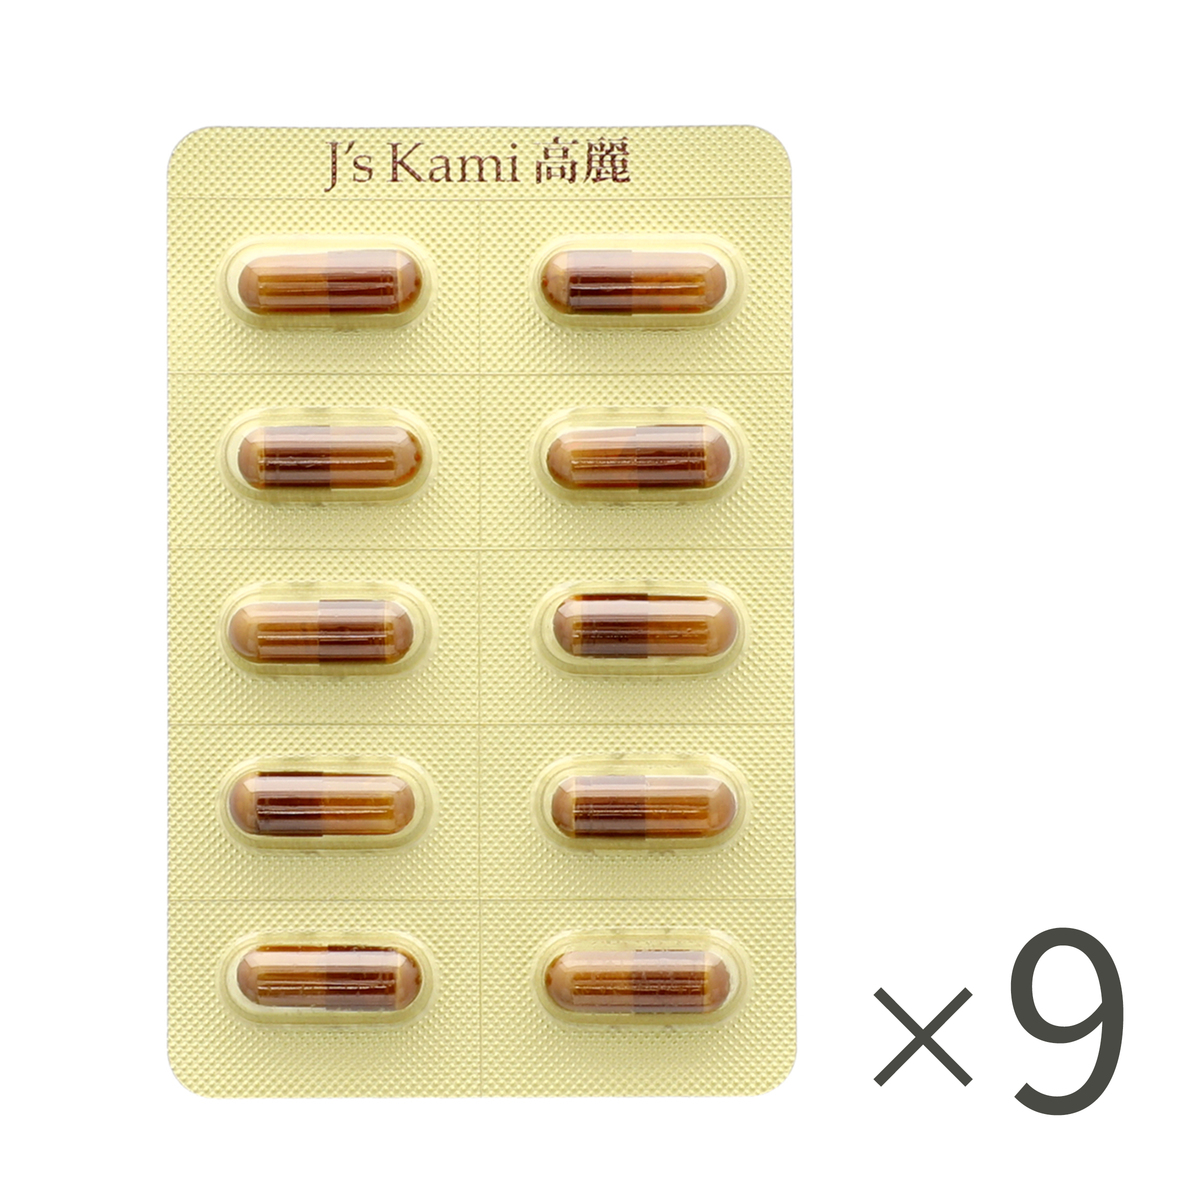 高濃縮紅参サプリメントJ'sKami高麗180粒 - 健康用品